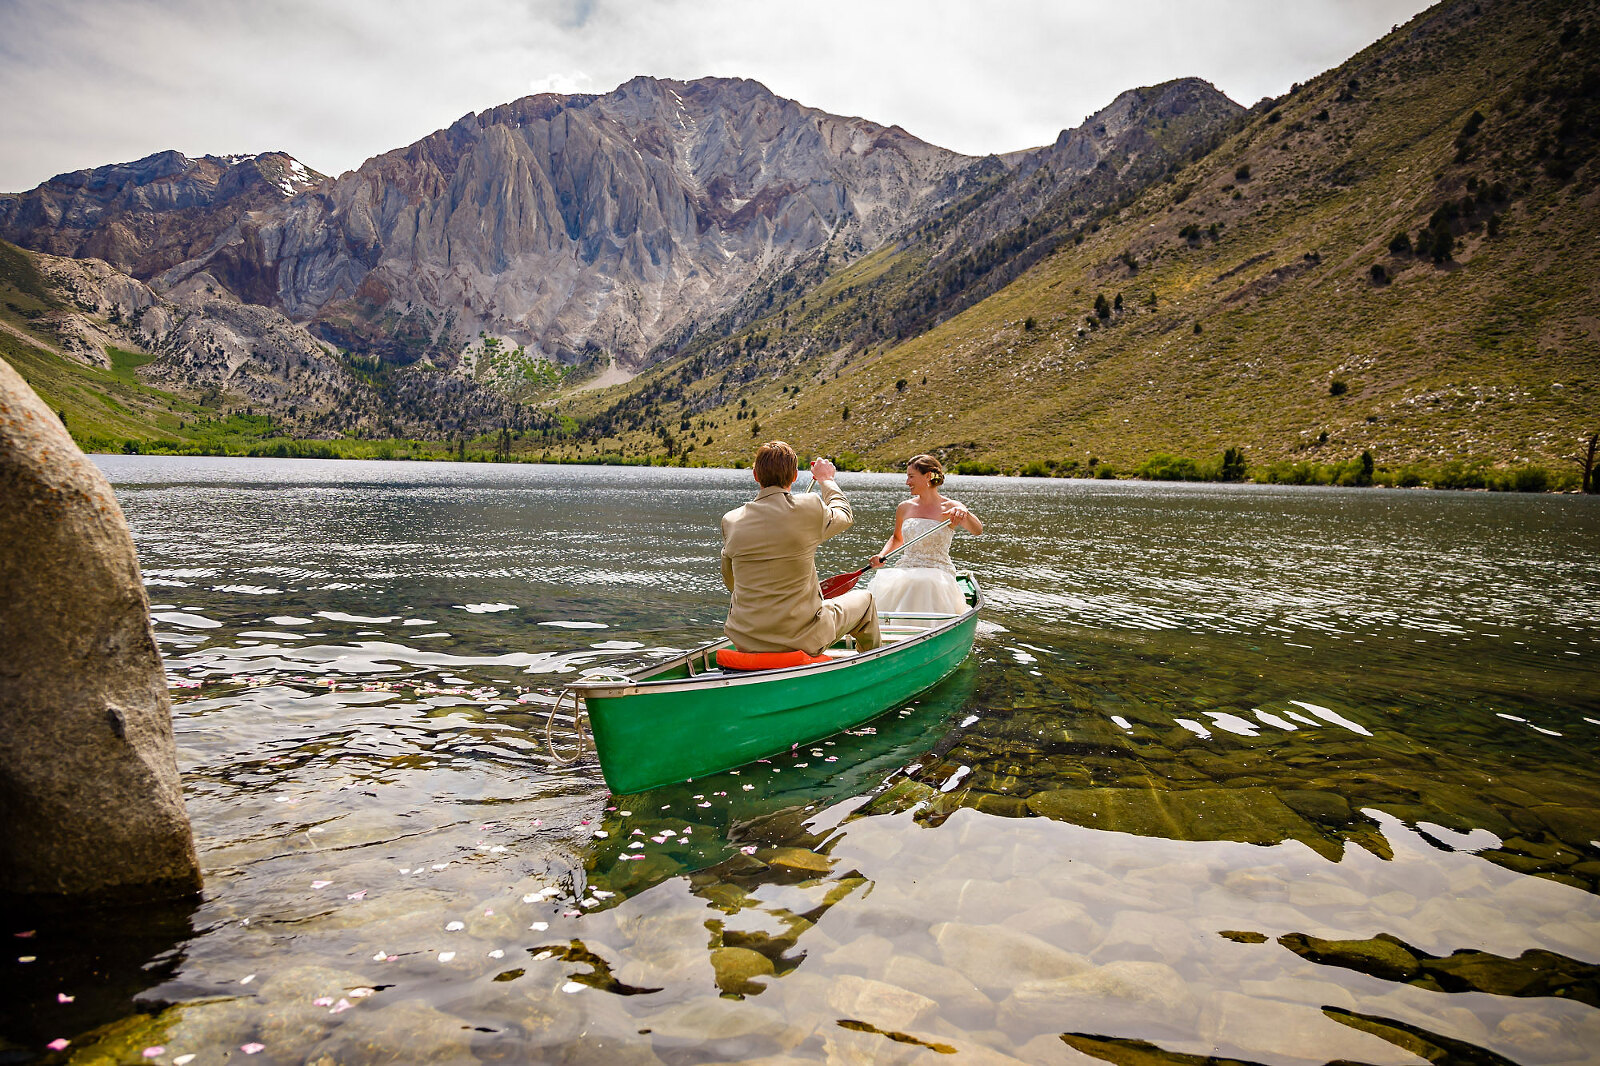 Wedding couple boating on mountain lake